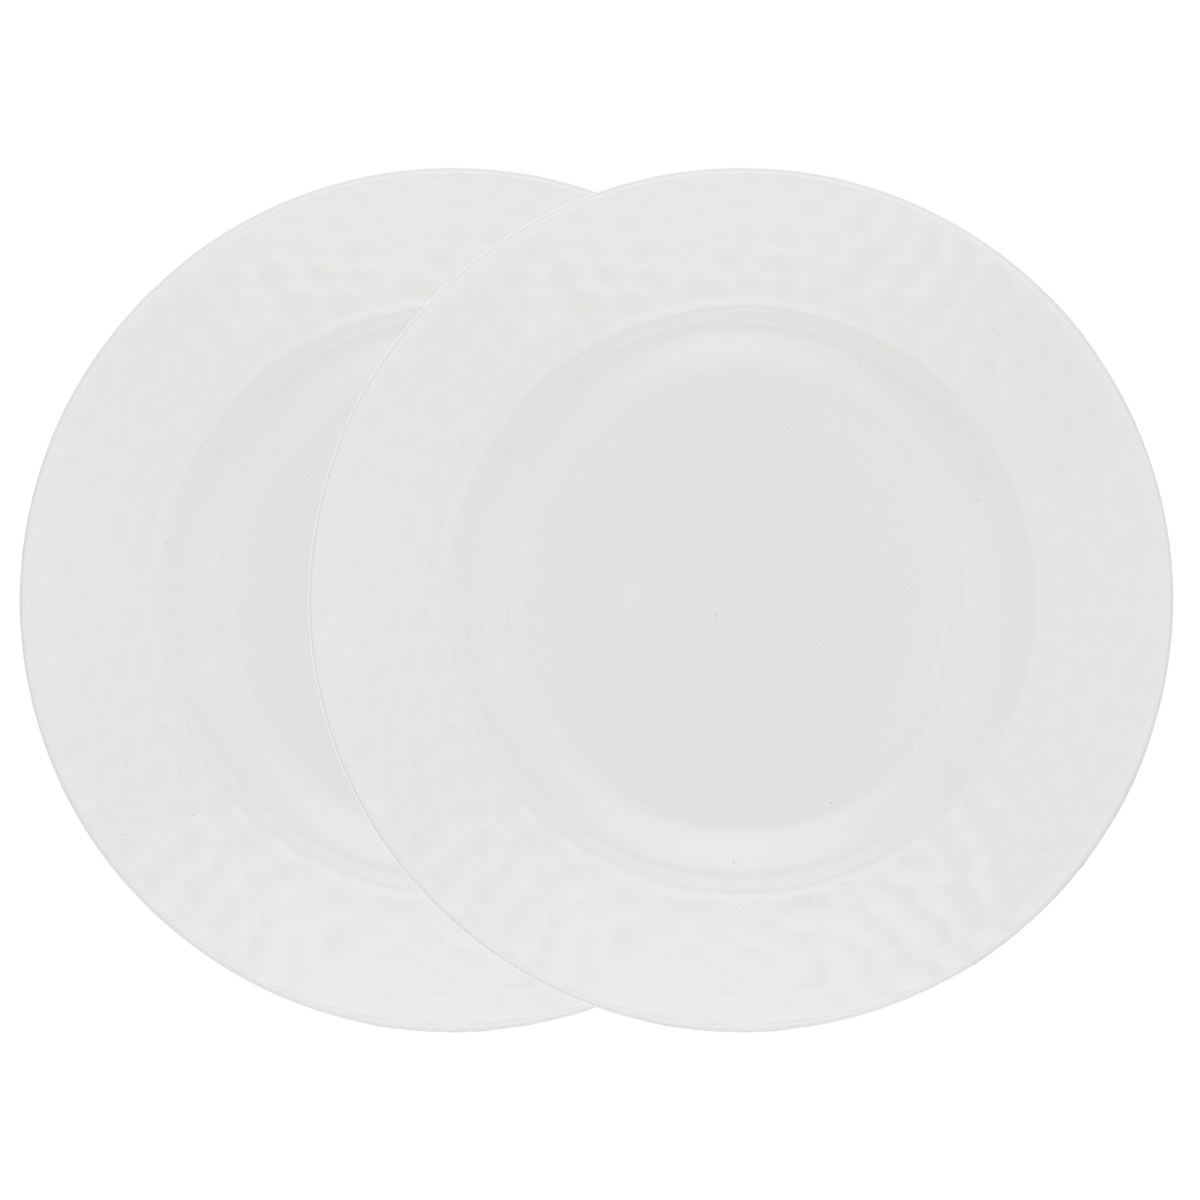 Набор суповых тарелок Gipfel Marbella 51713 20 см 2 предмета набор тарелок закусочных gipfel crema 51684 20 см 2 предмета